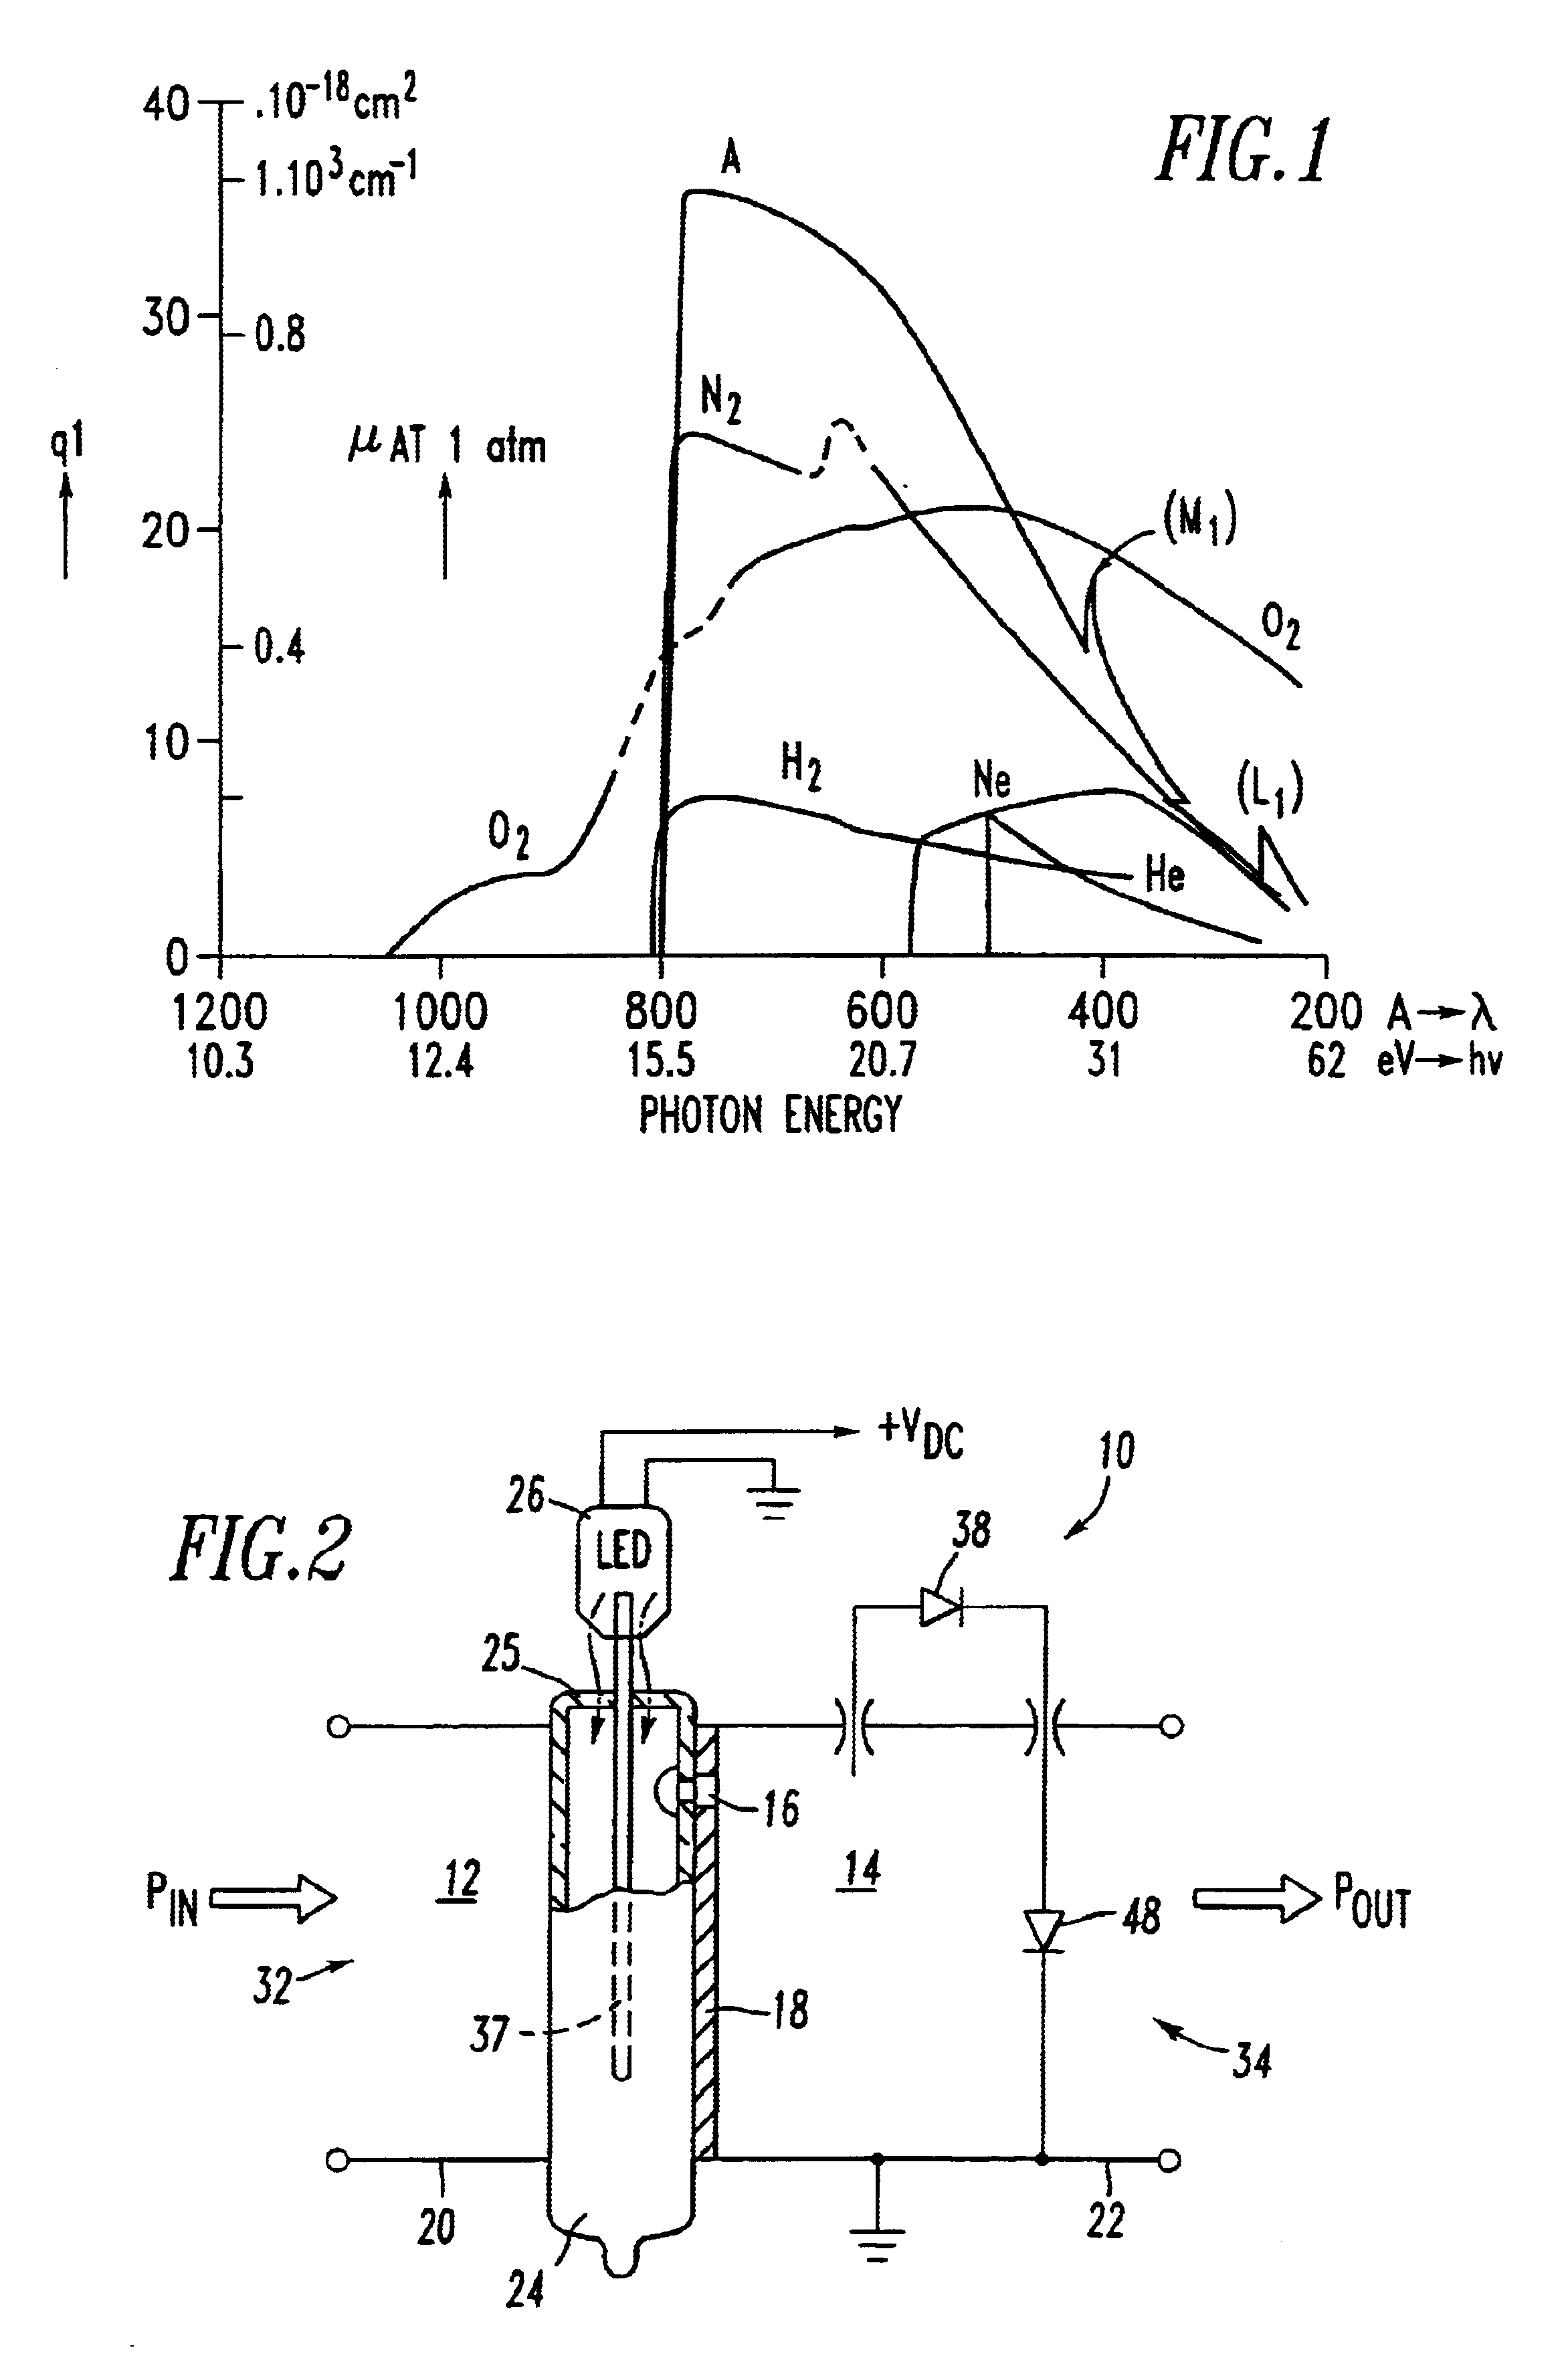 Photon primed non-radioactive gas plasma receiver protector